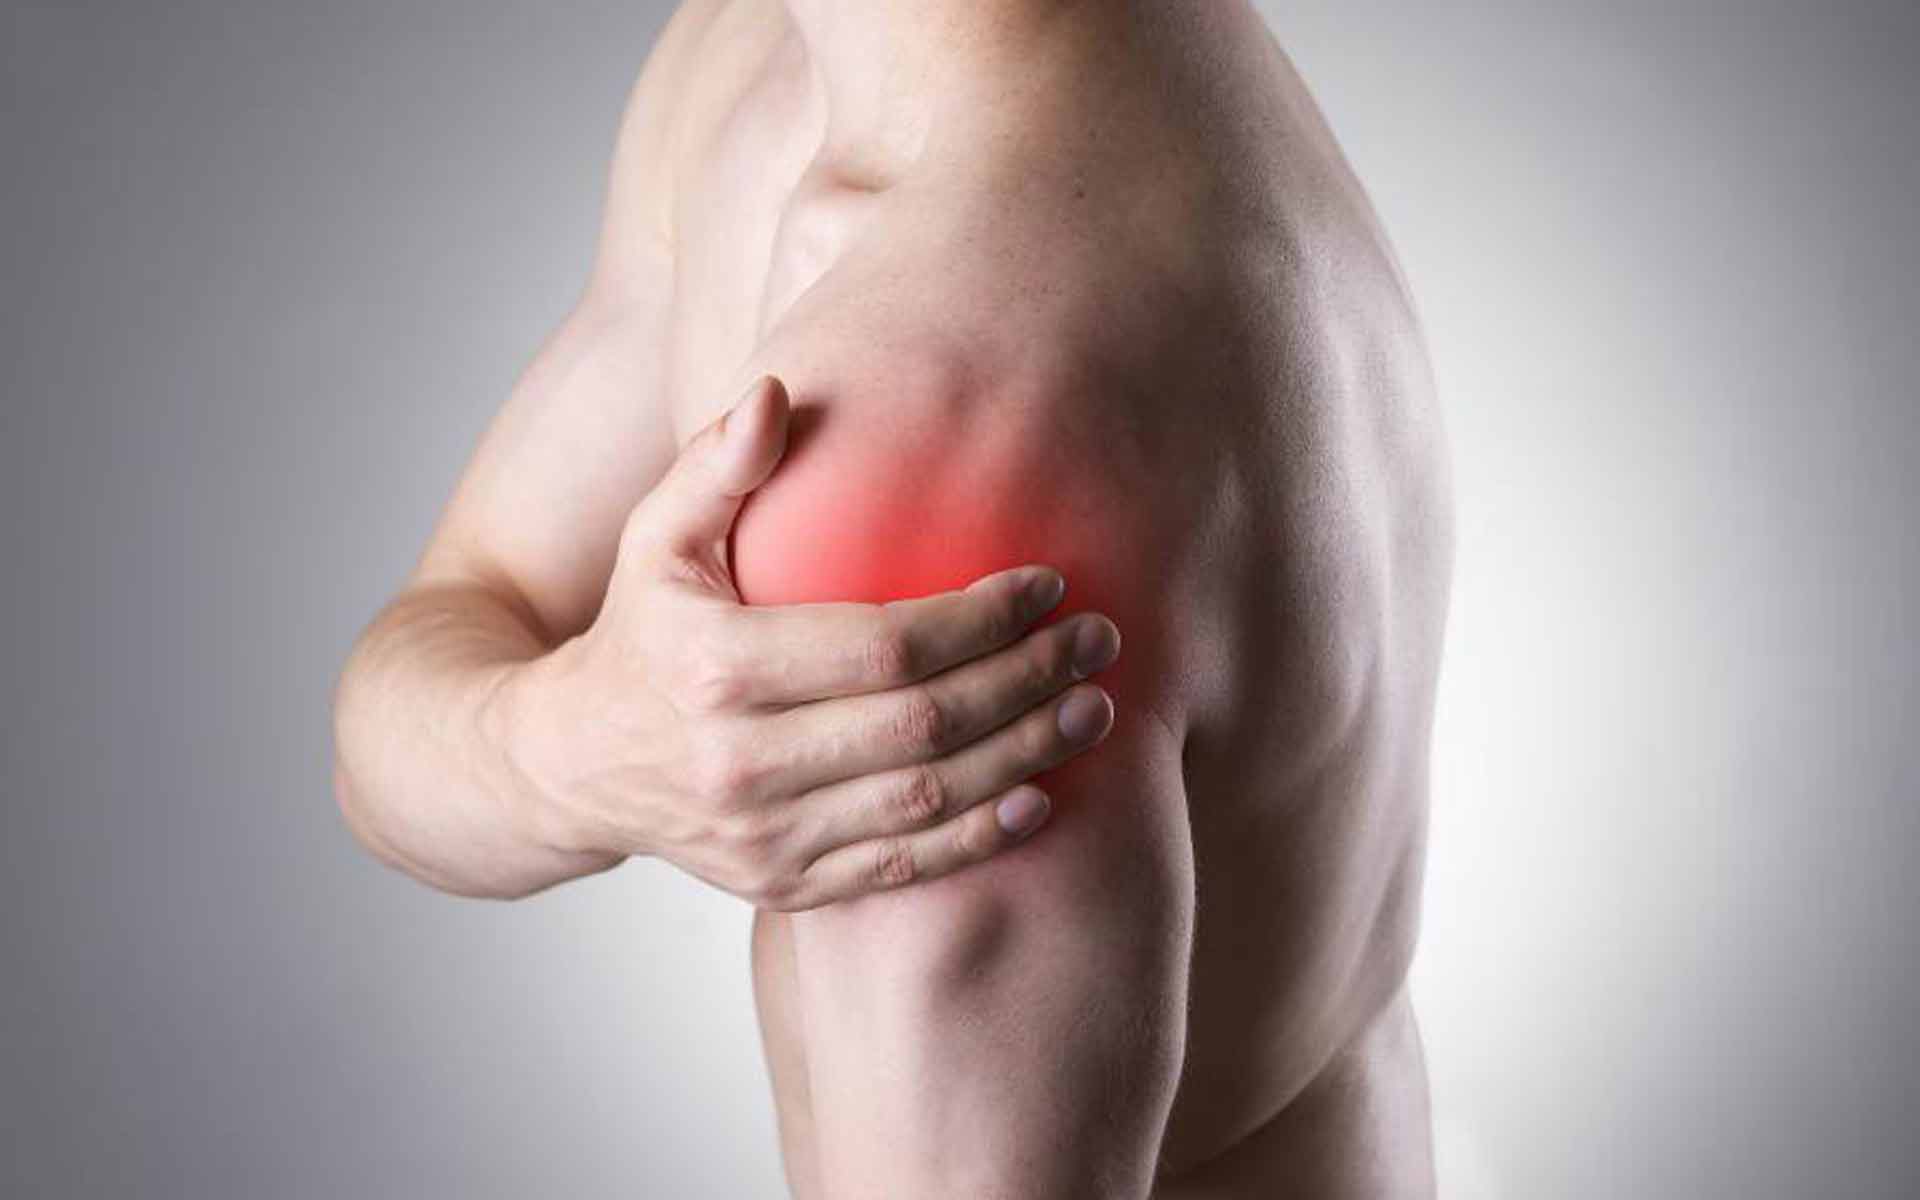 Qué relación existe entre el frío y el dolor de espalda? - IAC